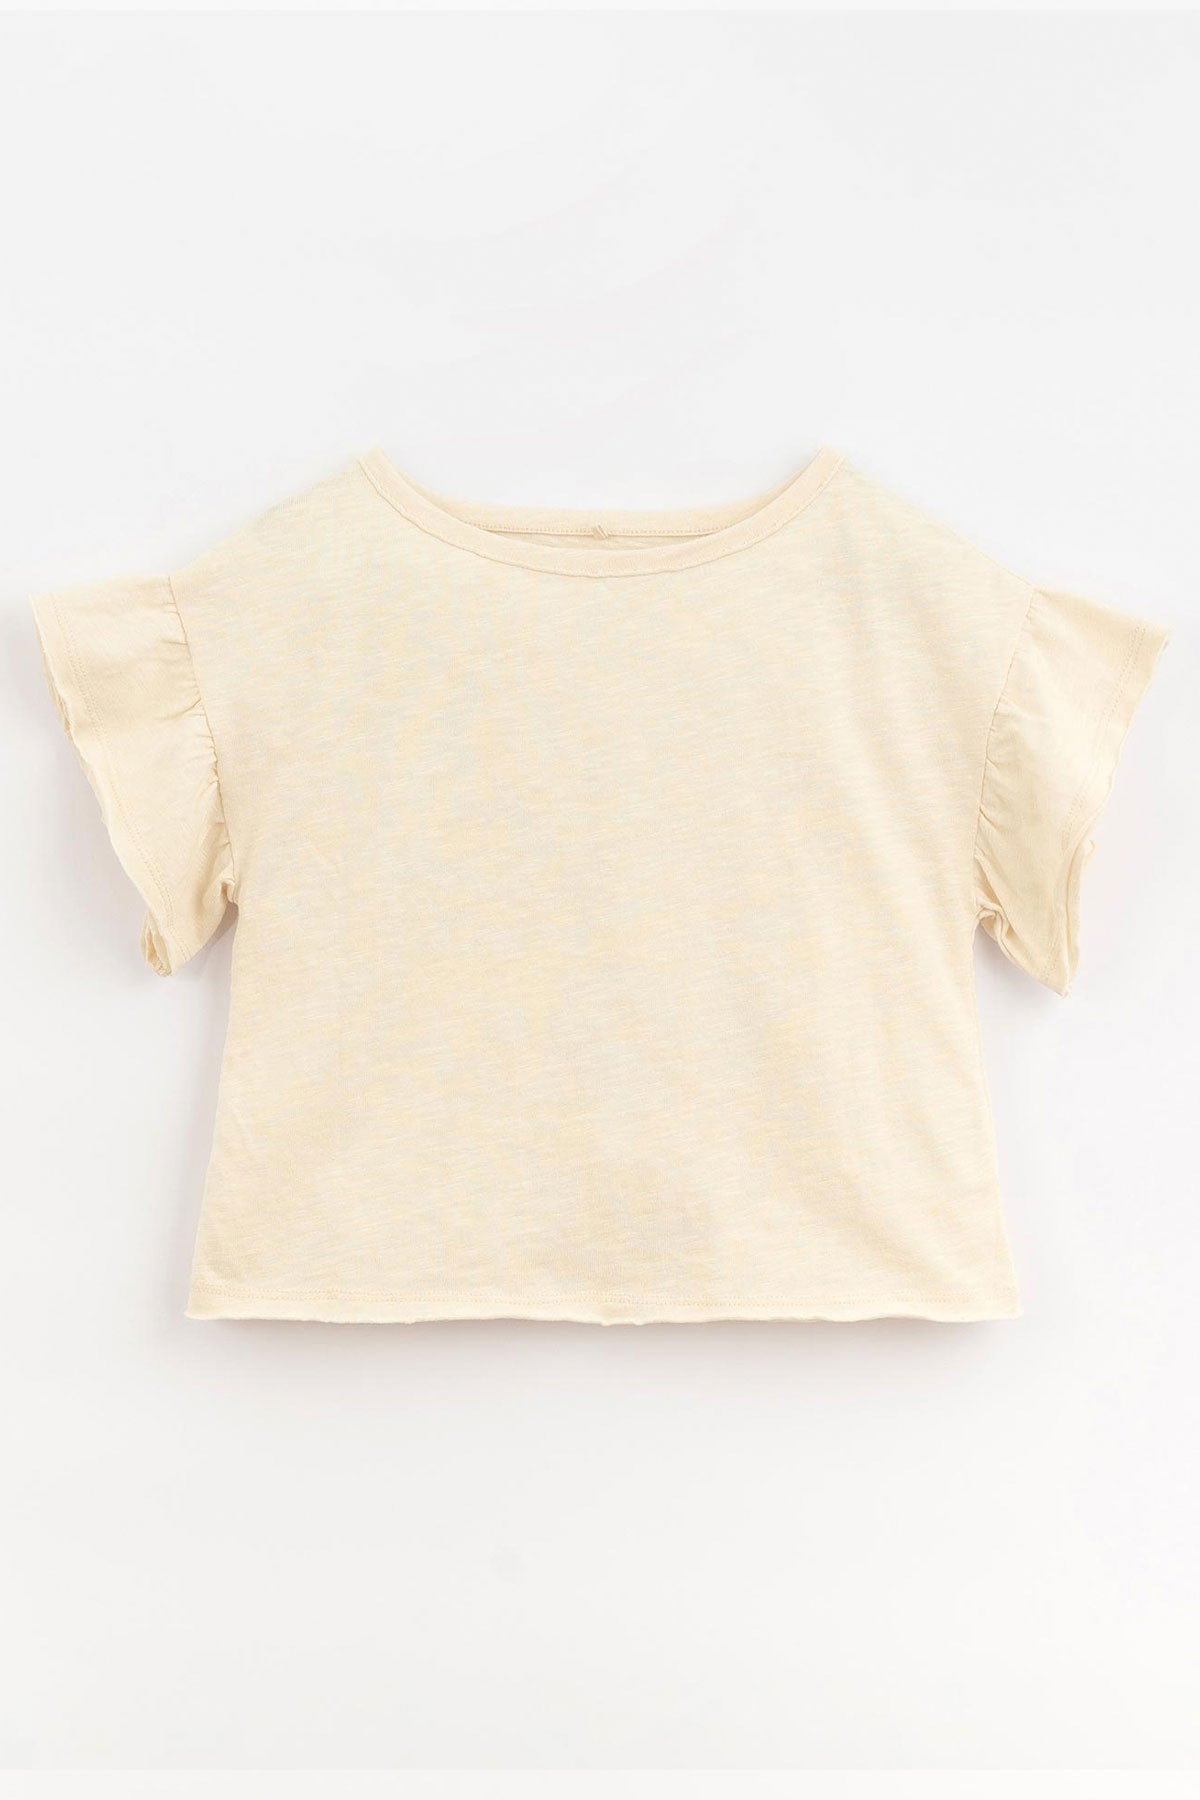 Kurzarm T-Shirt aus Bio-Baumwolle